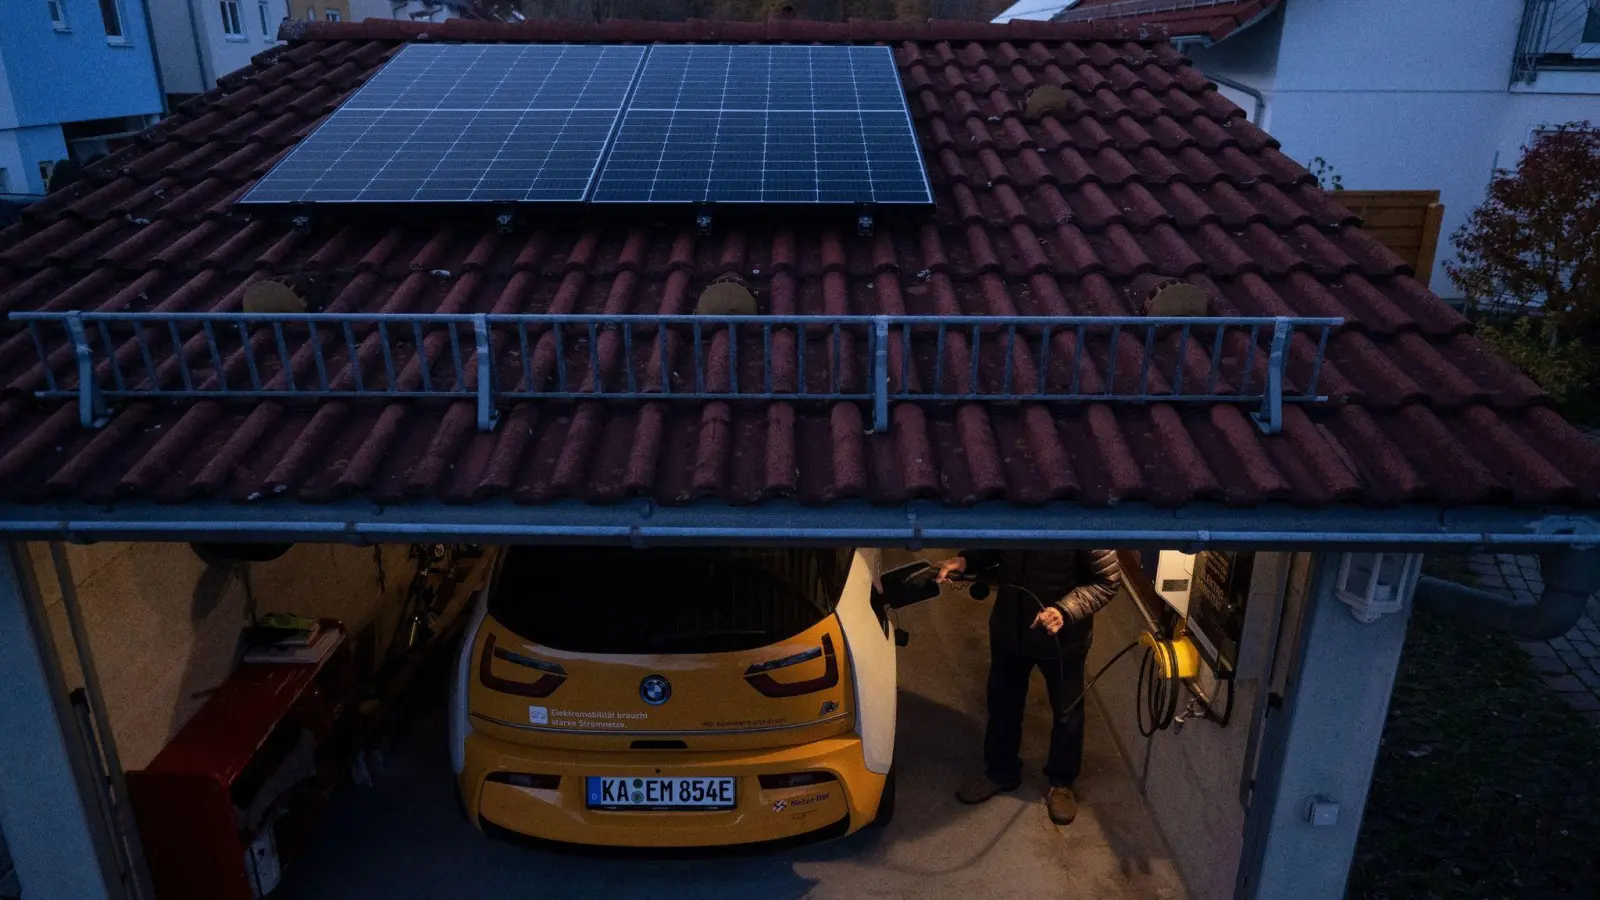 Solarstrom selbst produzieren - und damit das E-Auto laden. (Foto: Marijan Murat/dpa/dpa-tmn)